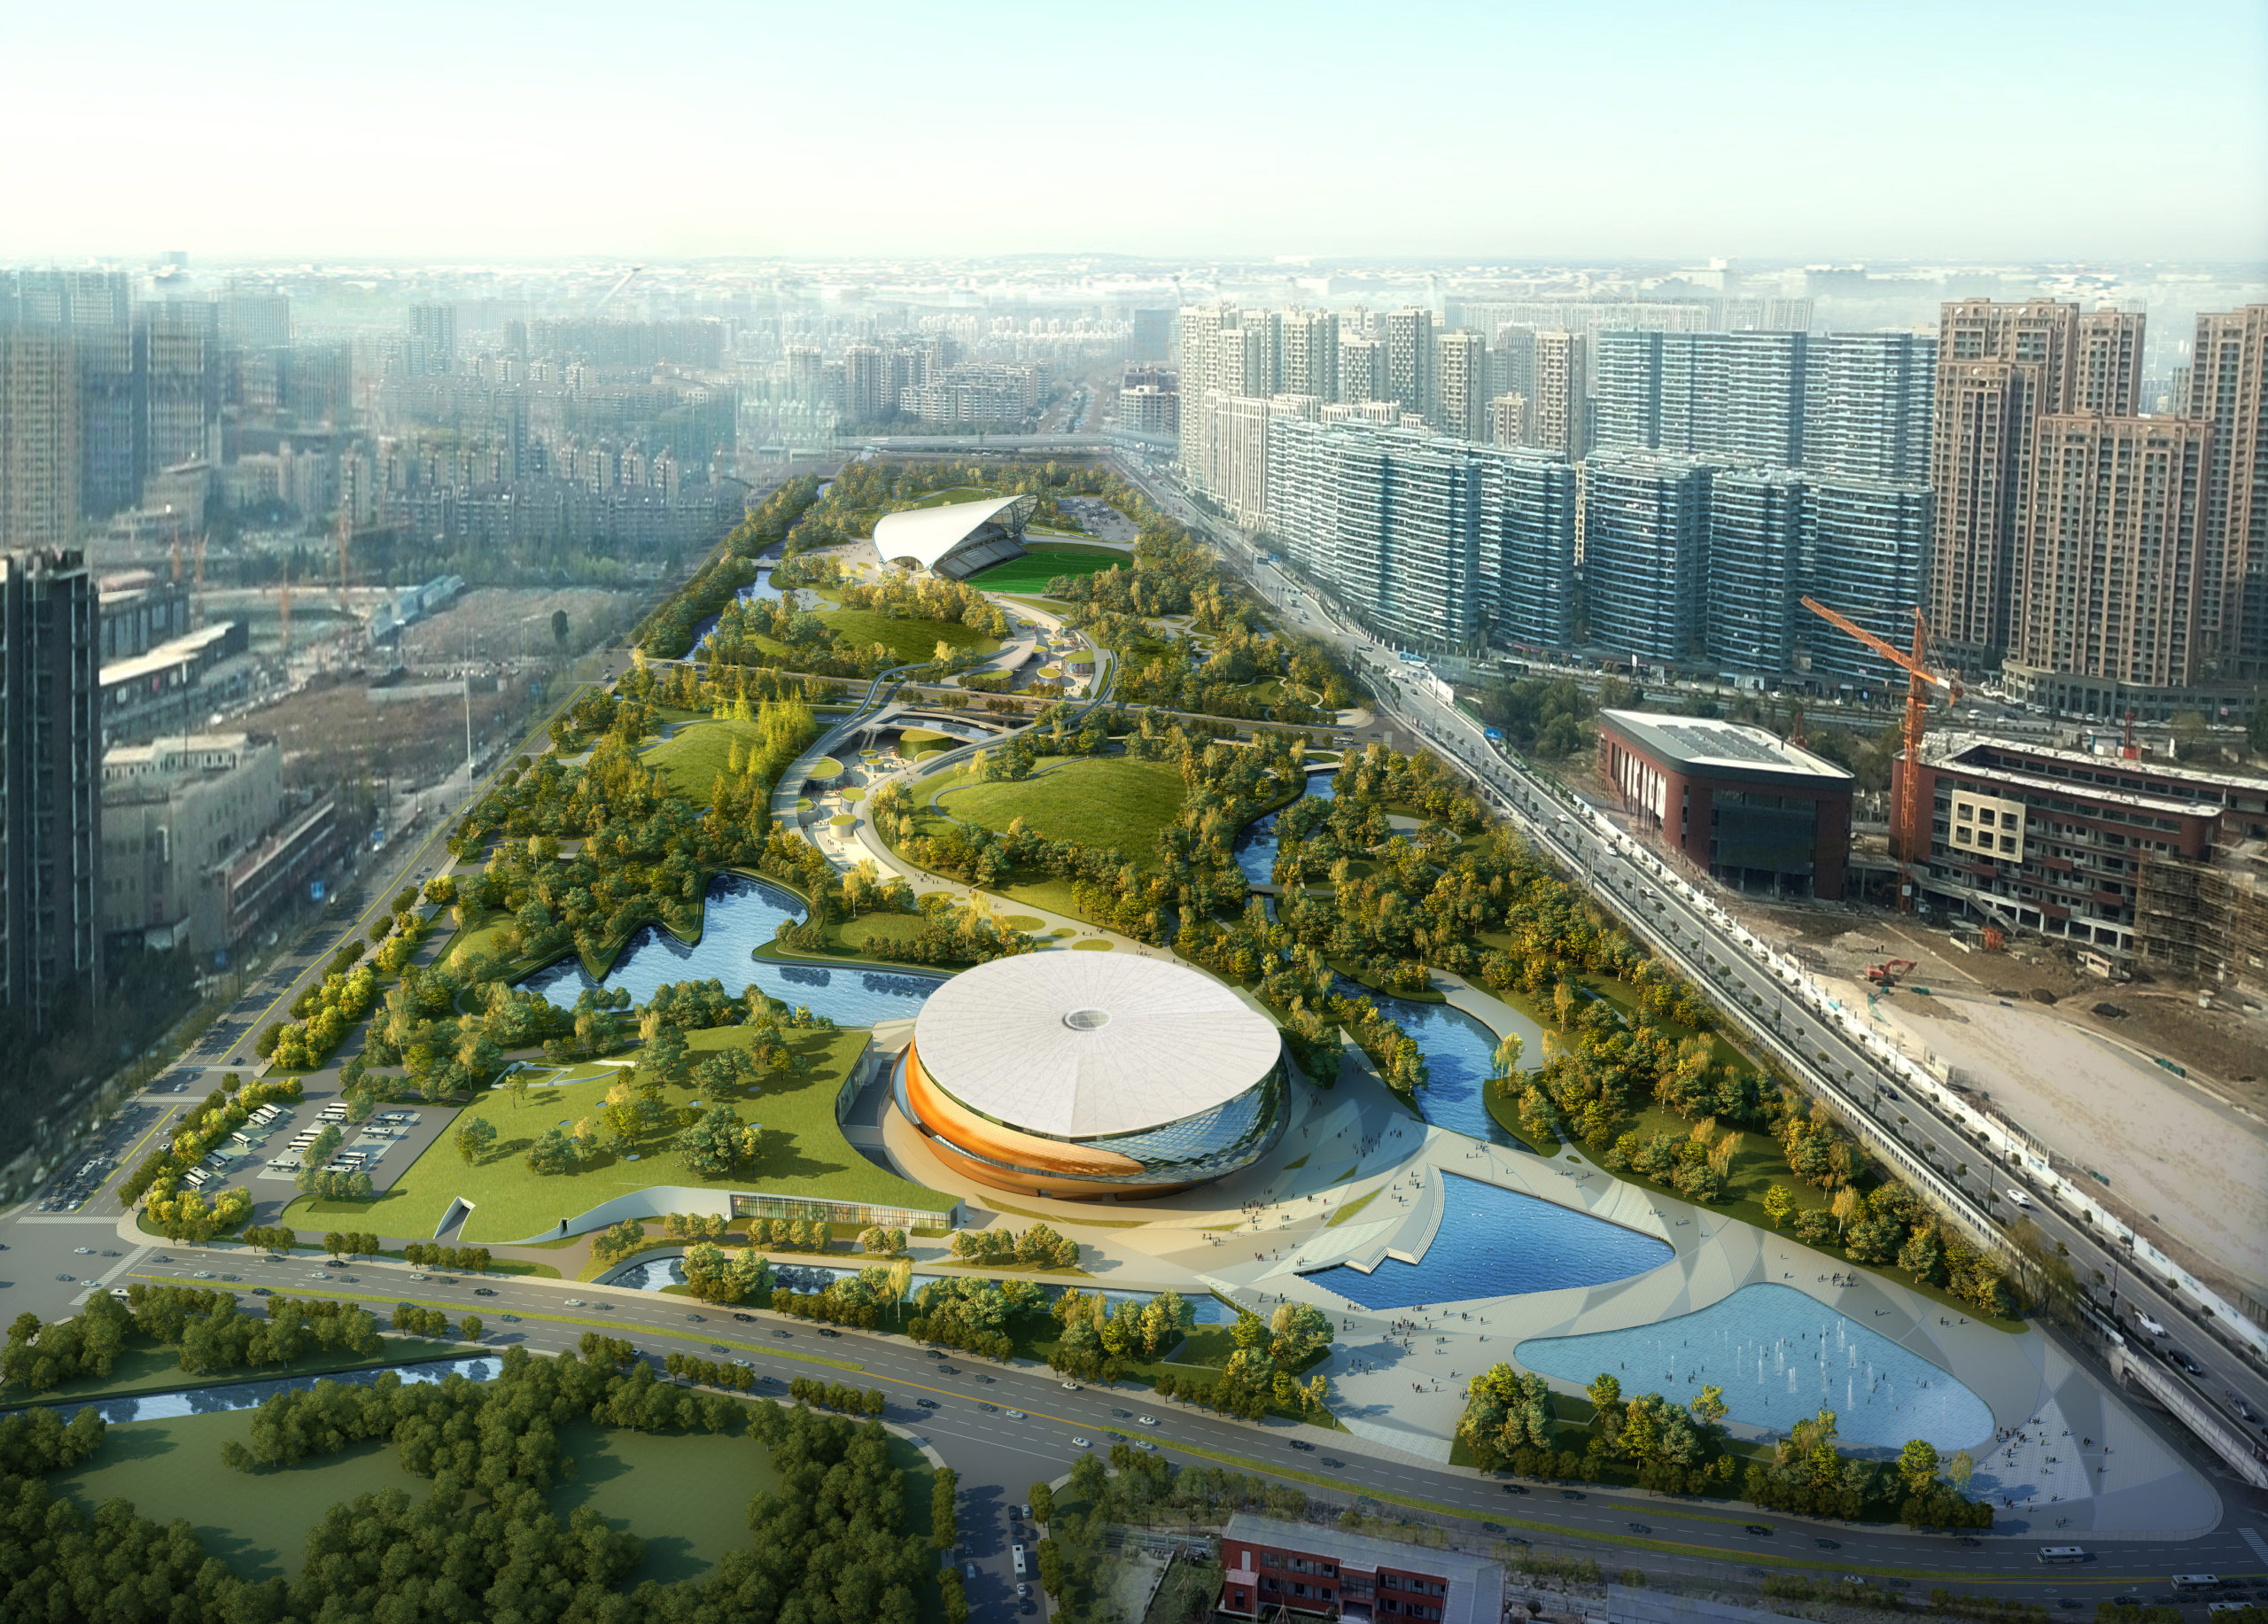 iconic stadiums Hangzhou Asian Games 2022 by Archi-Tectonics, Hangzhou, China